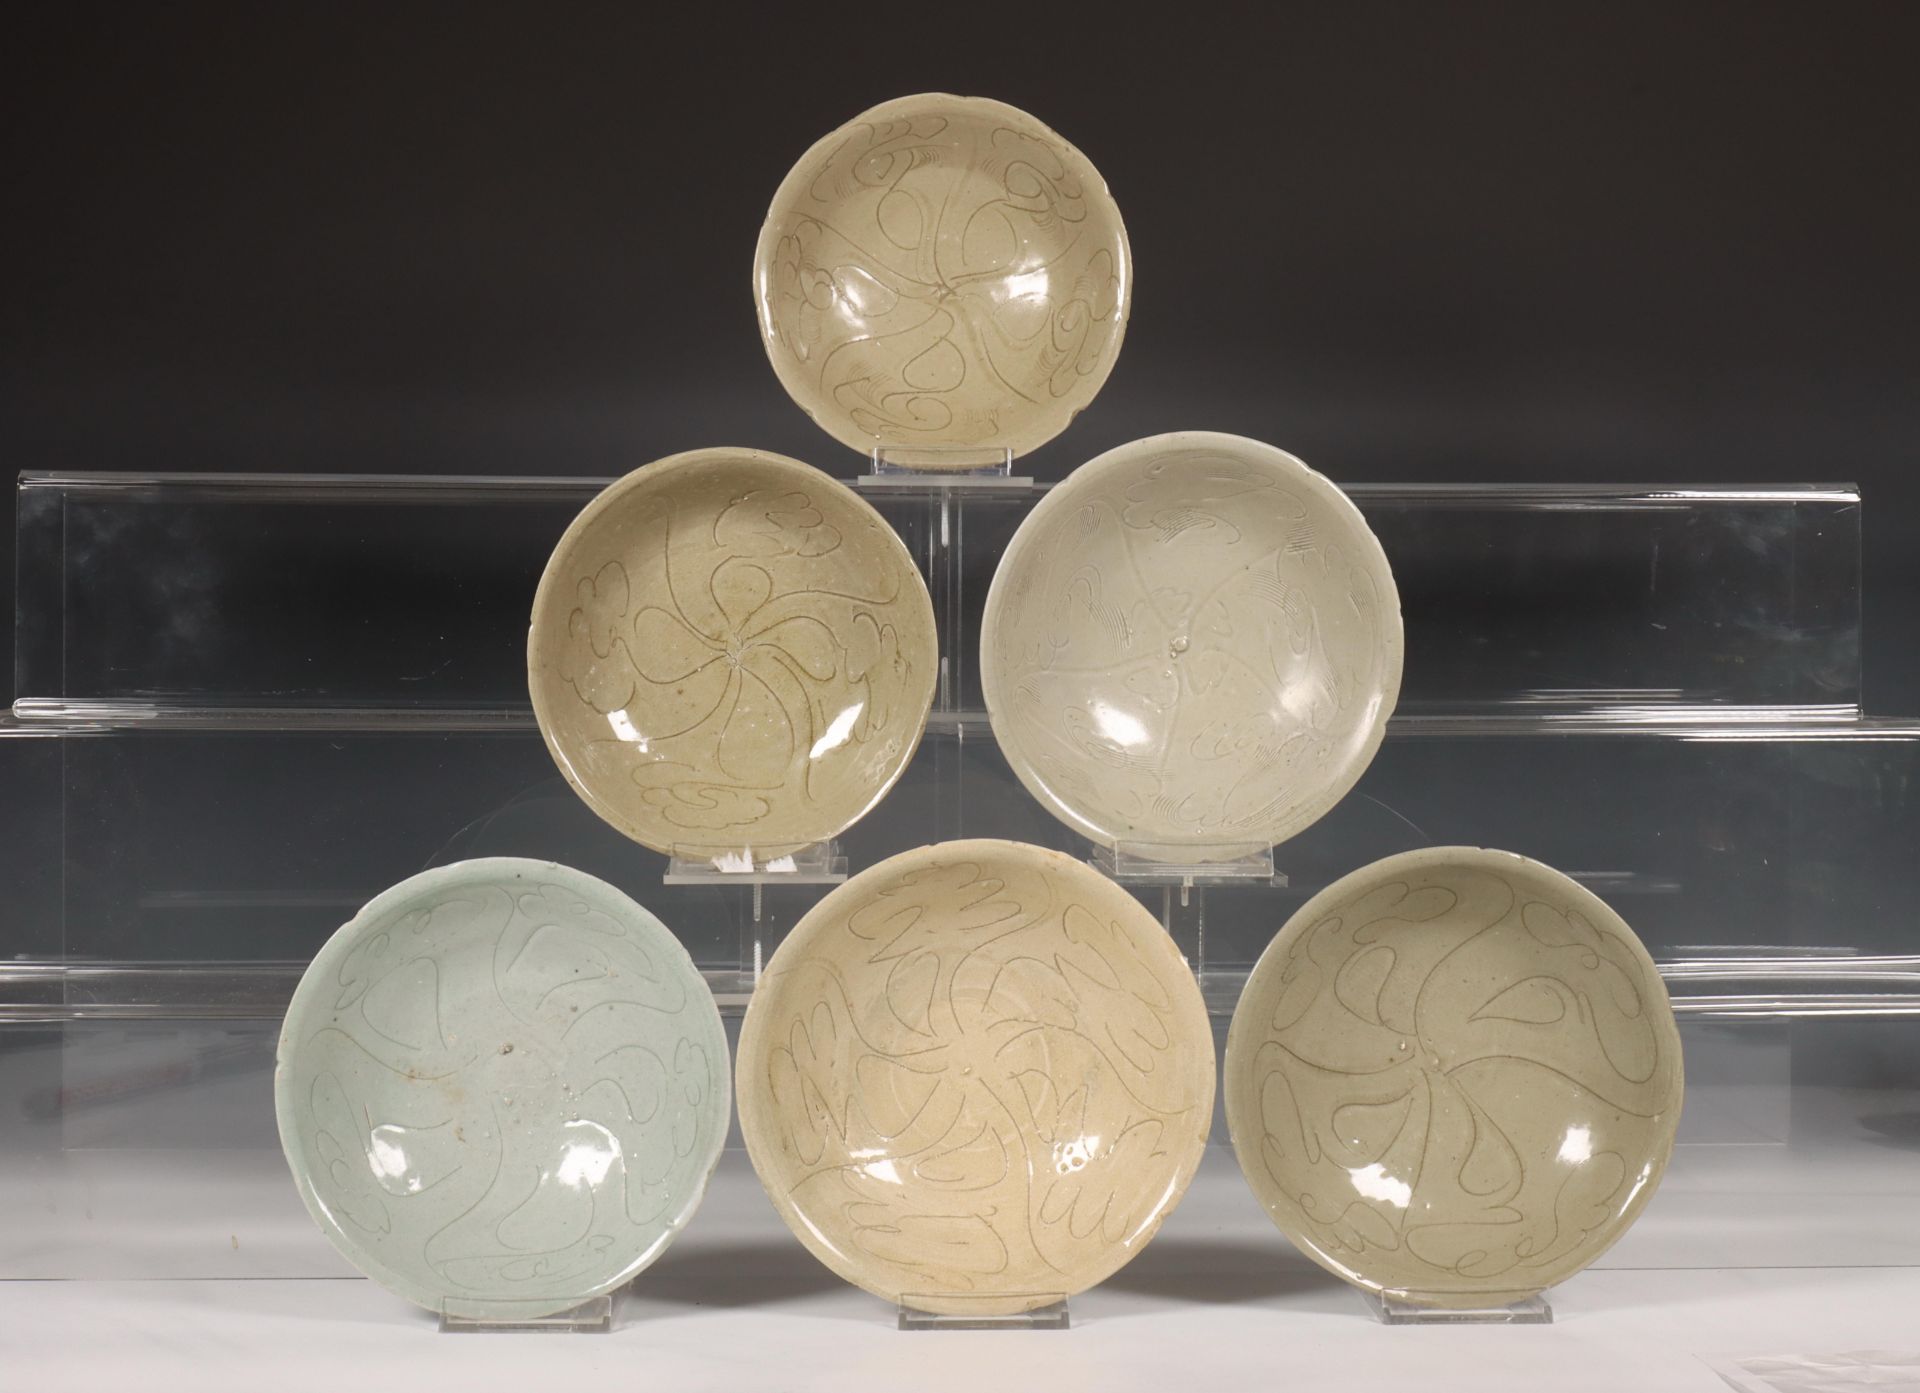 China, zes celadon geglazuurde porseleinen kommen, Noordelijke Song-dynastie, 10e-12e eeuw,